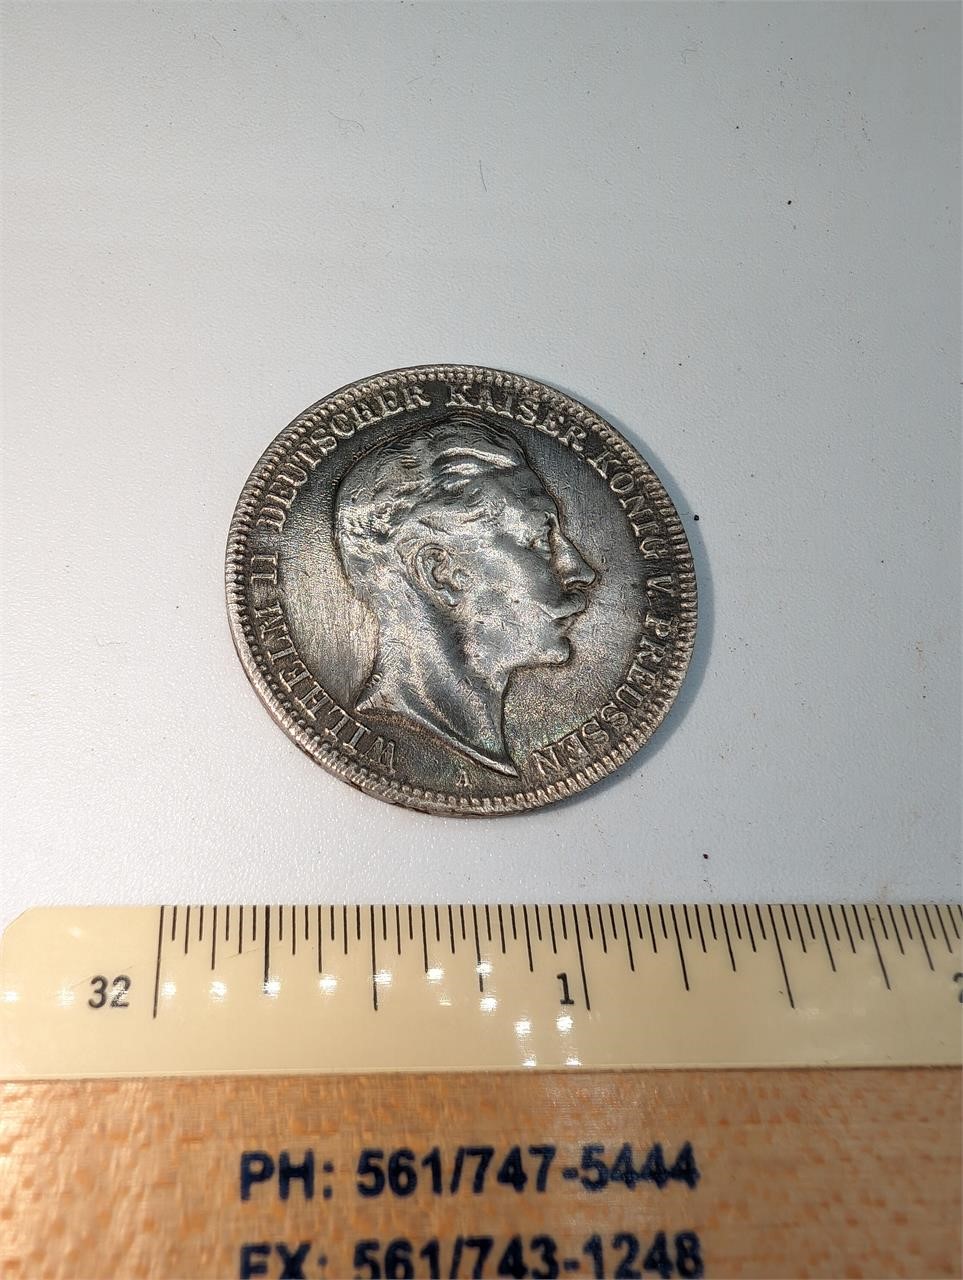 1910 3 Mark Silver Coin